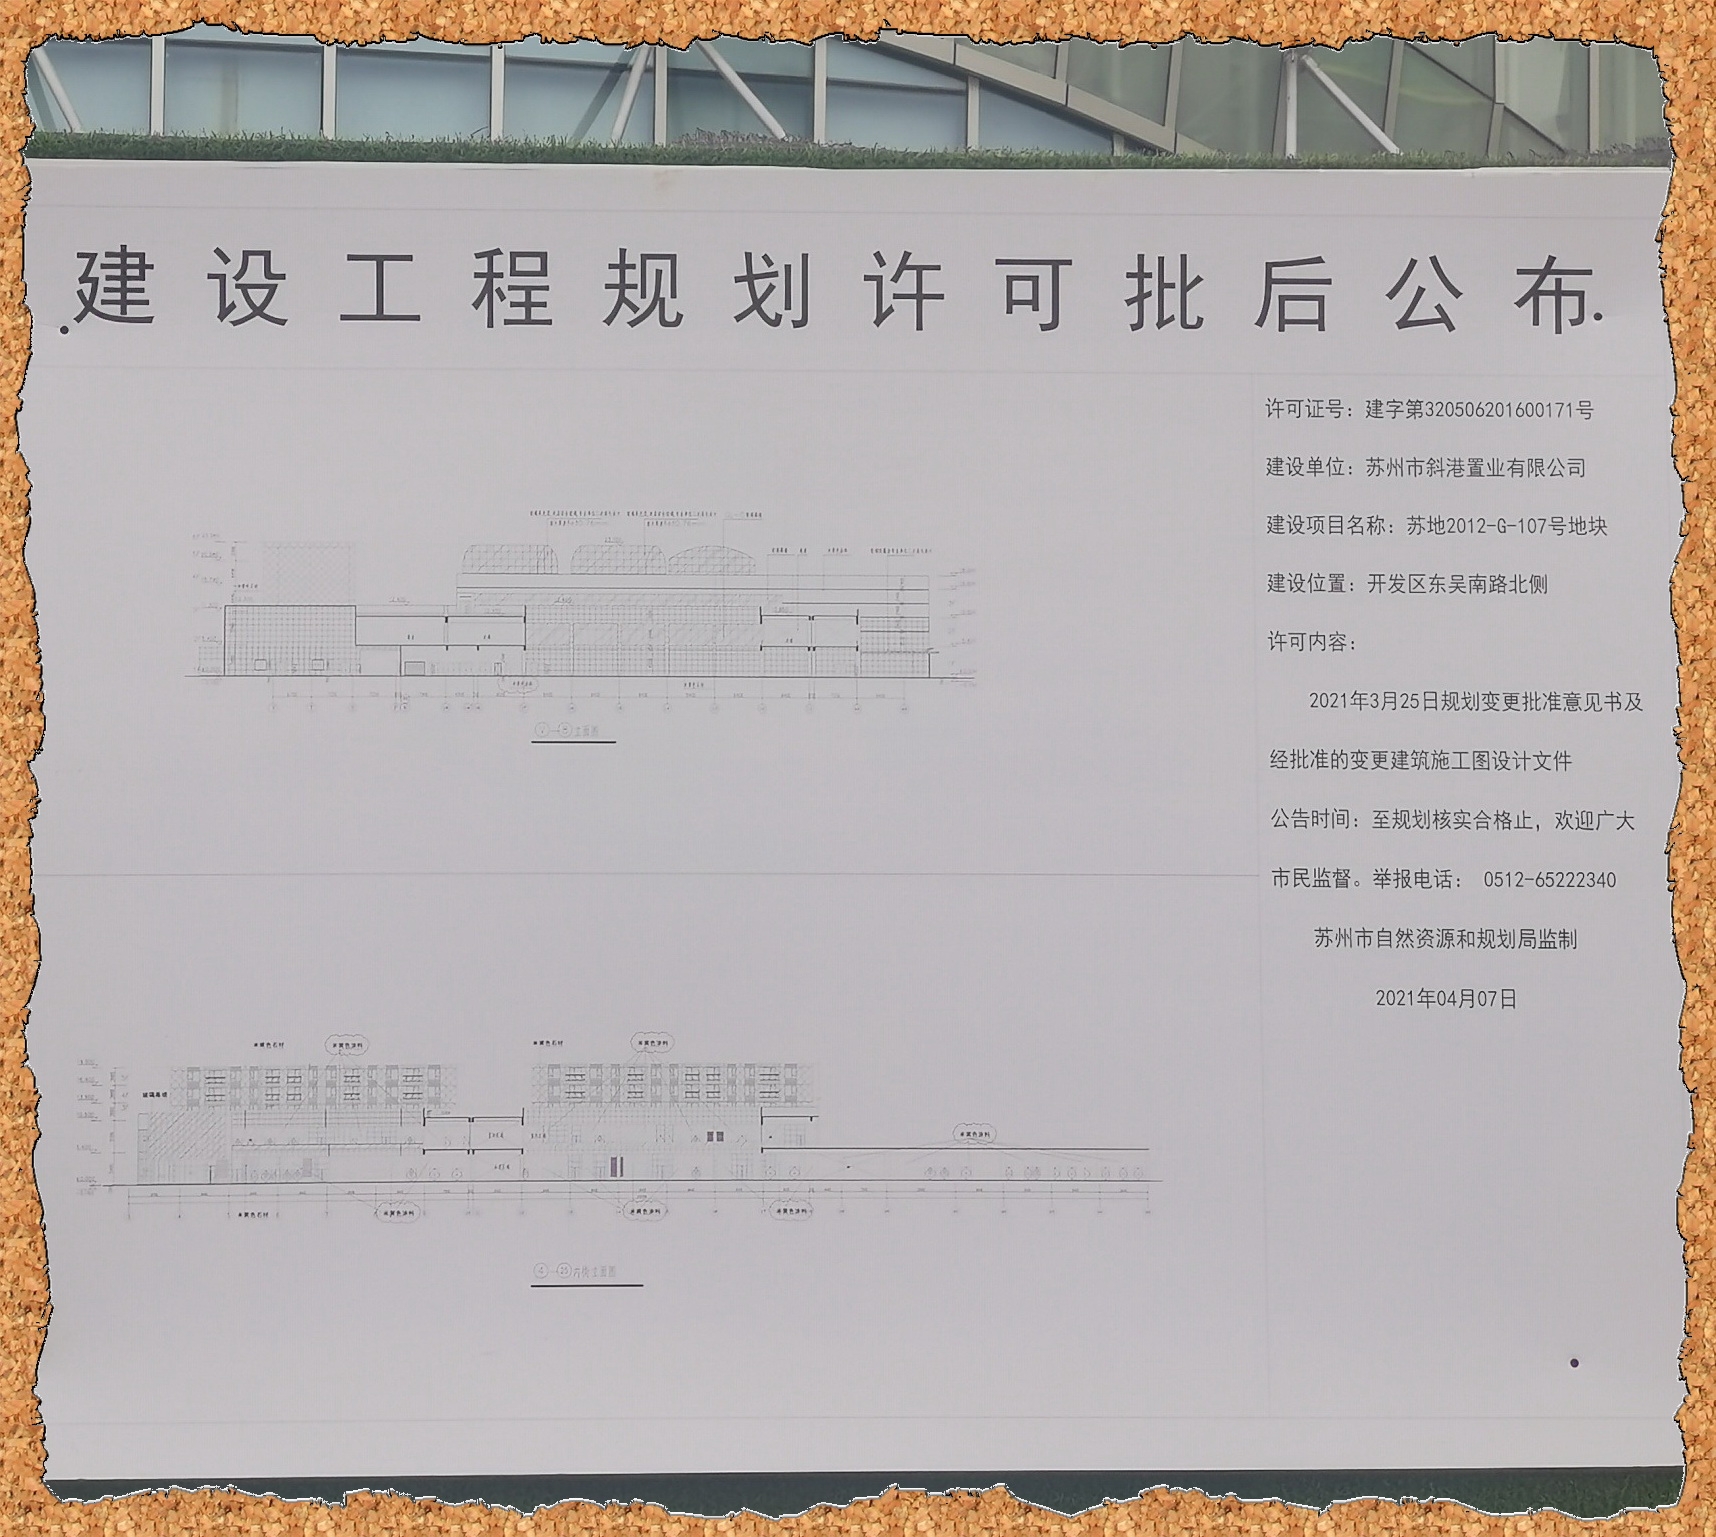 苏地2012-G-107号地块项目：吴风生活广场，施工现场 公告牌